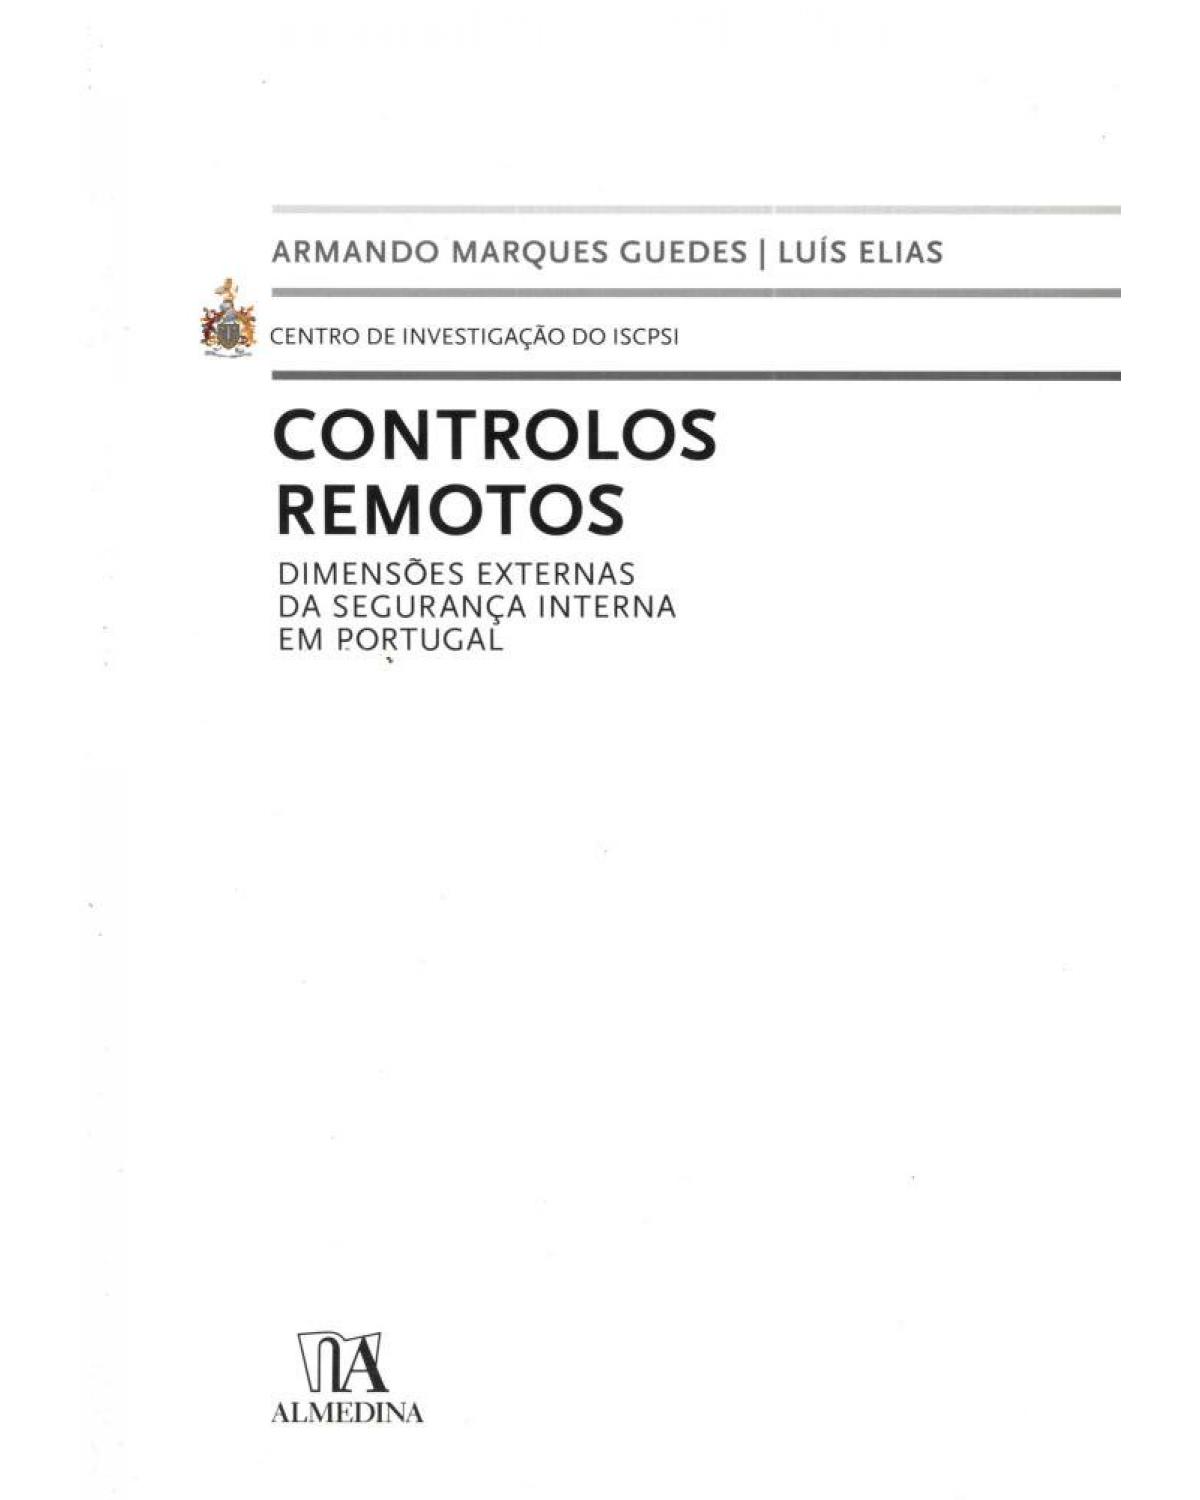 Controlos remotos - dimensões externas da segurança interna em Portugal - 1ª Edição | 2010